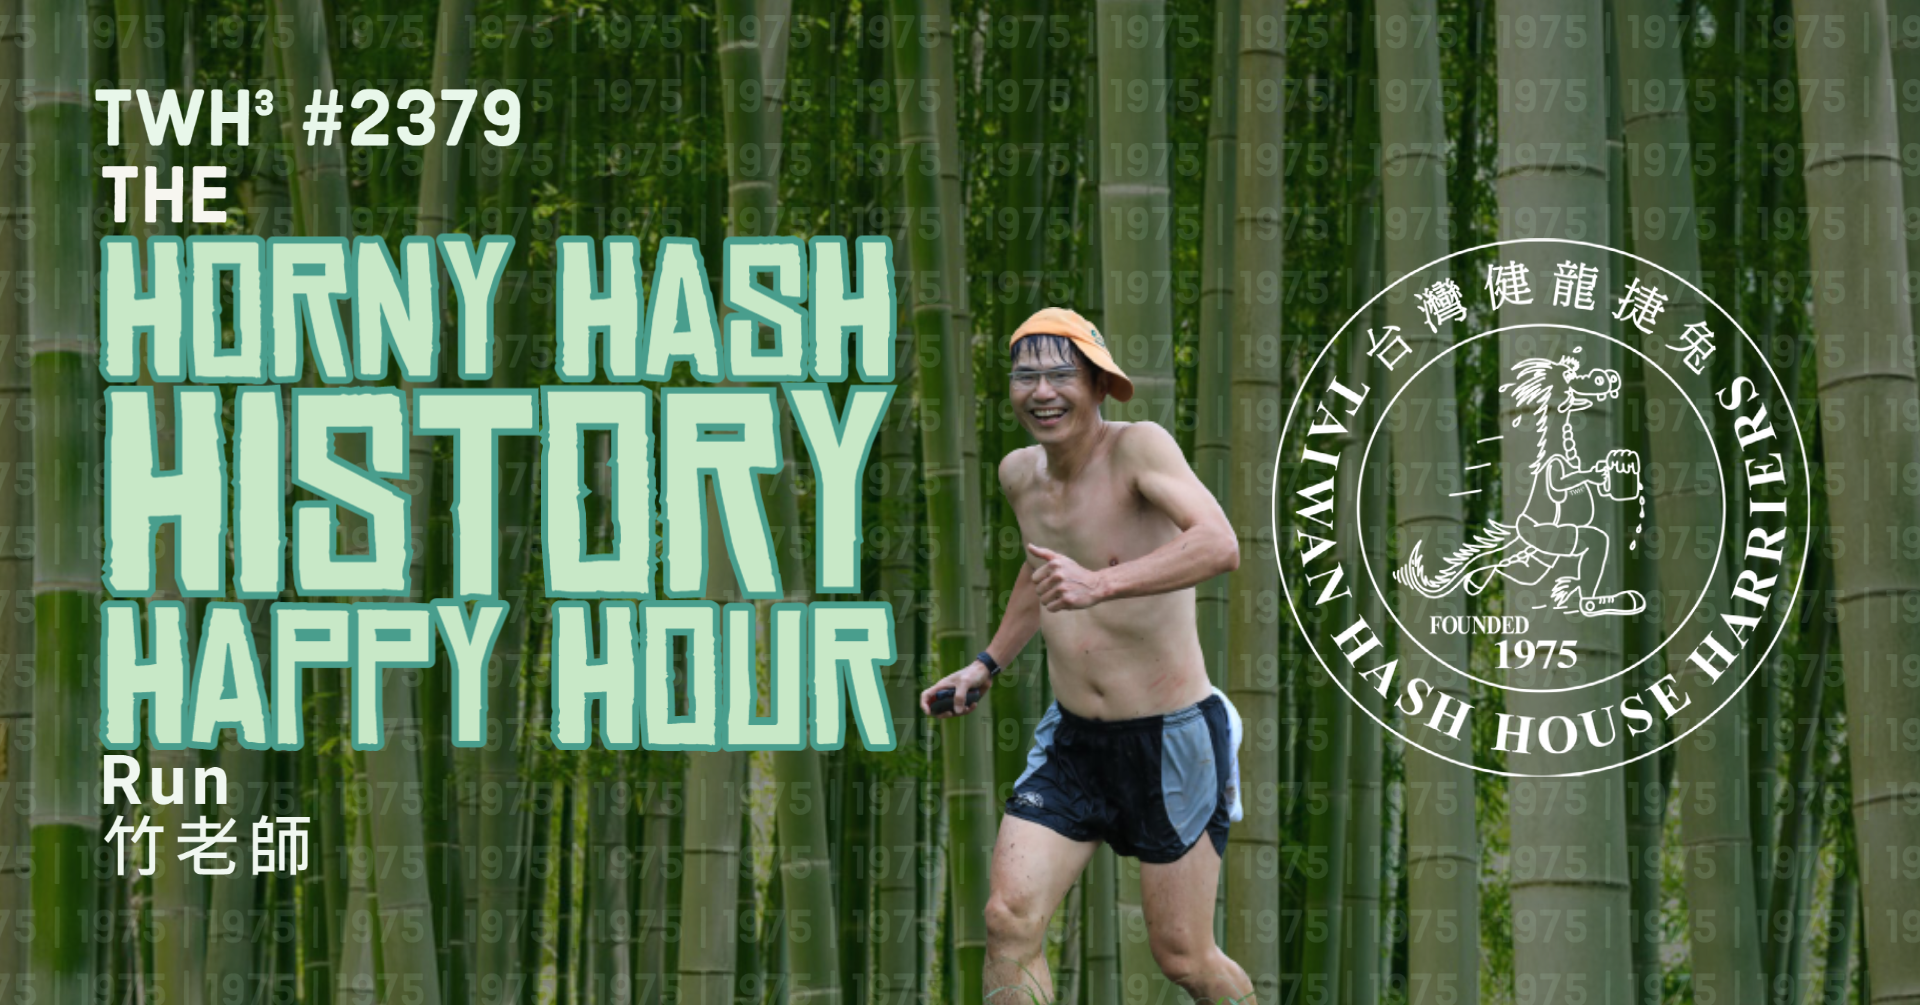 #2379 - The Horny Hash History Happy Hour Run